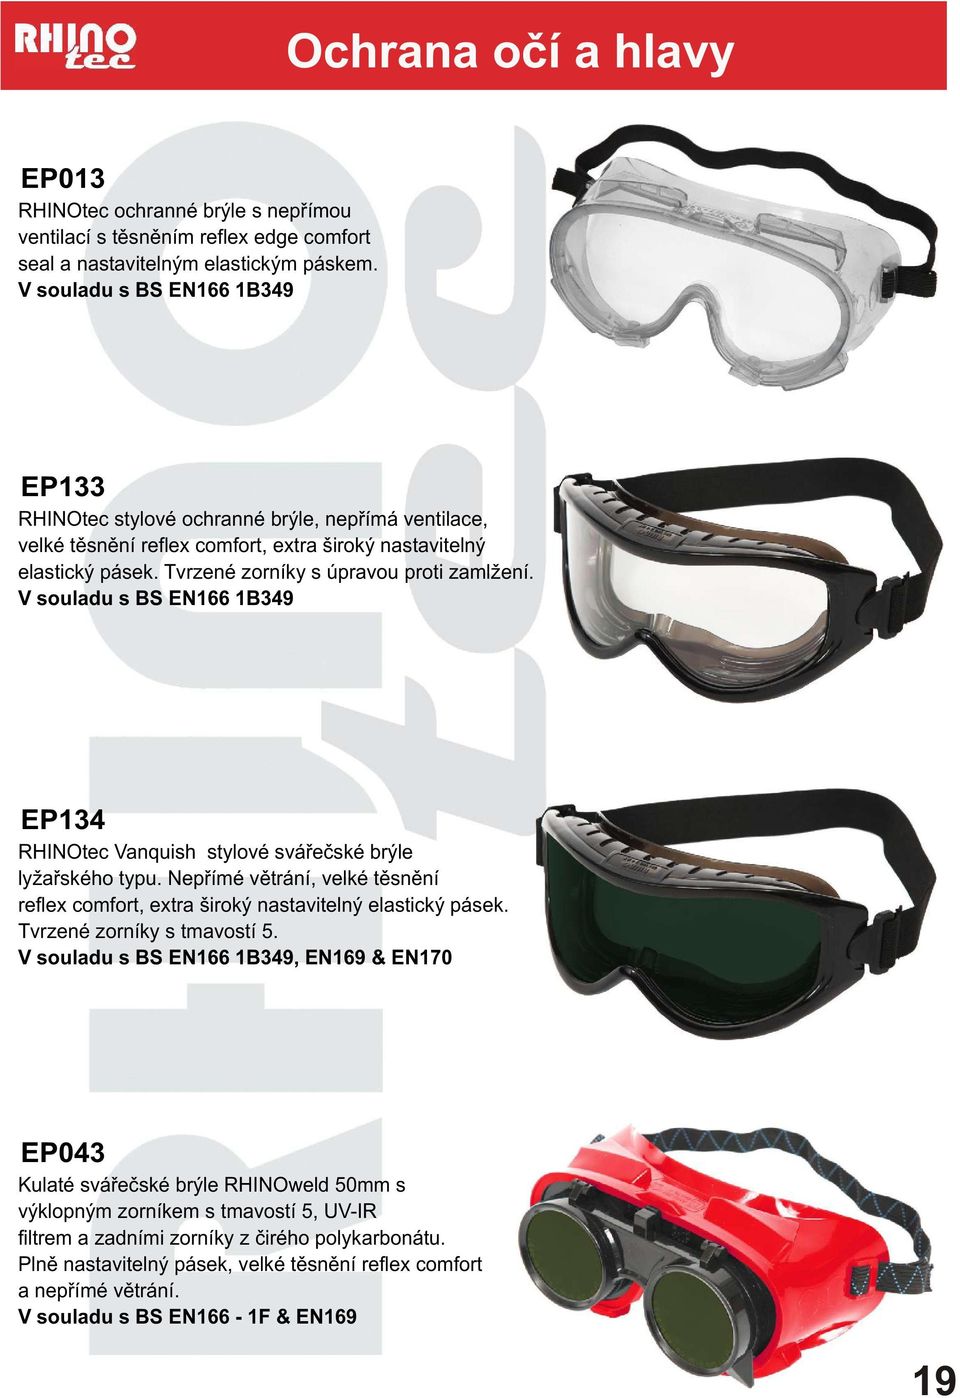 V souladu s BS EN66 B349 EP34 RHINOtec Vanquish stylové sváøeèské brýle lyžaøského typu. Nepøímé vìtrání, velké tìsnìní reflex comfort, extra široký nastavitelný elastický pásek.